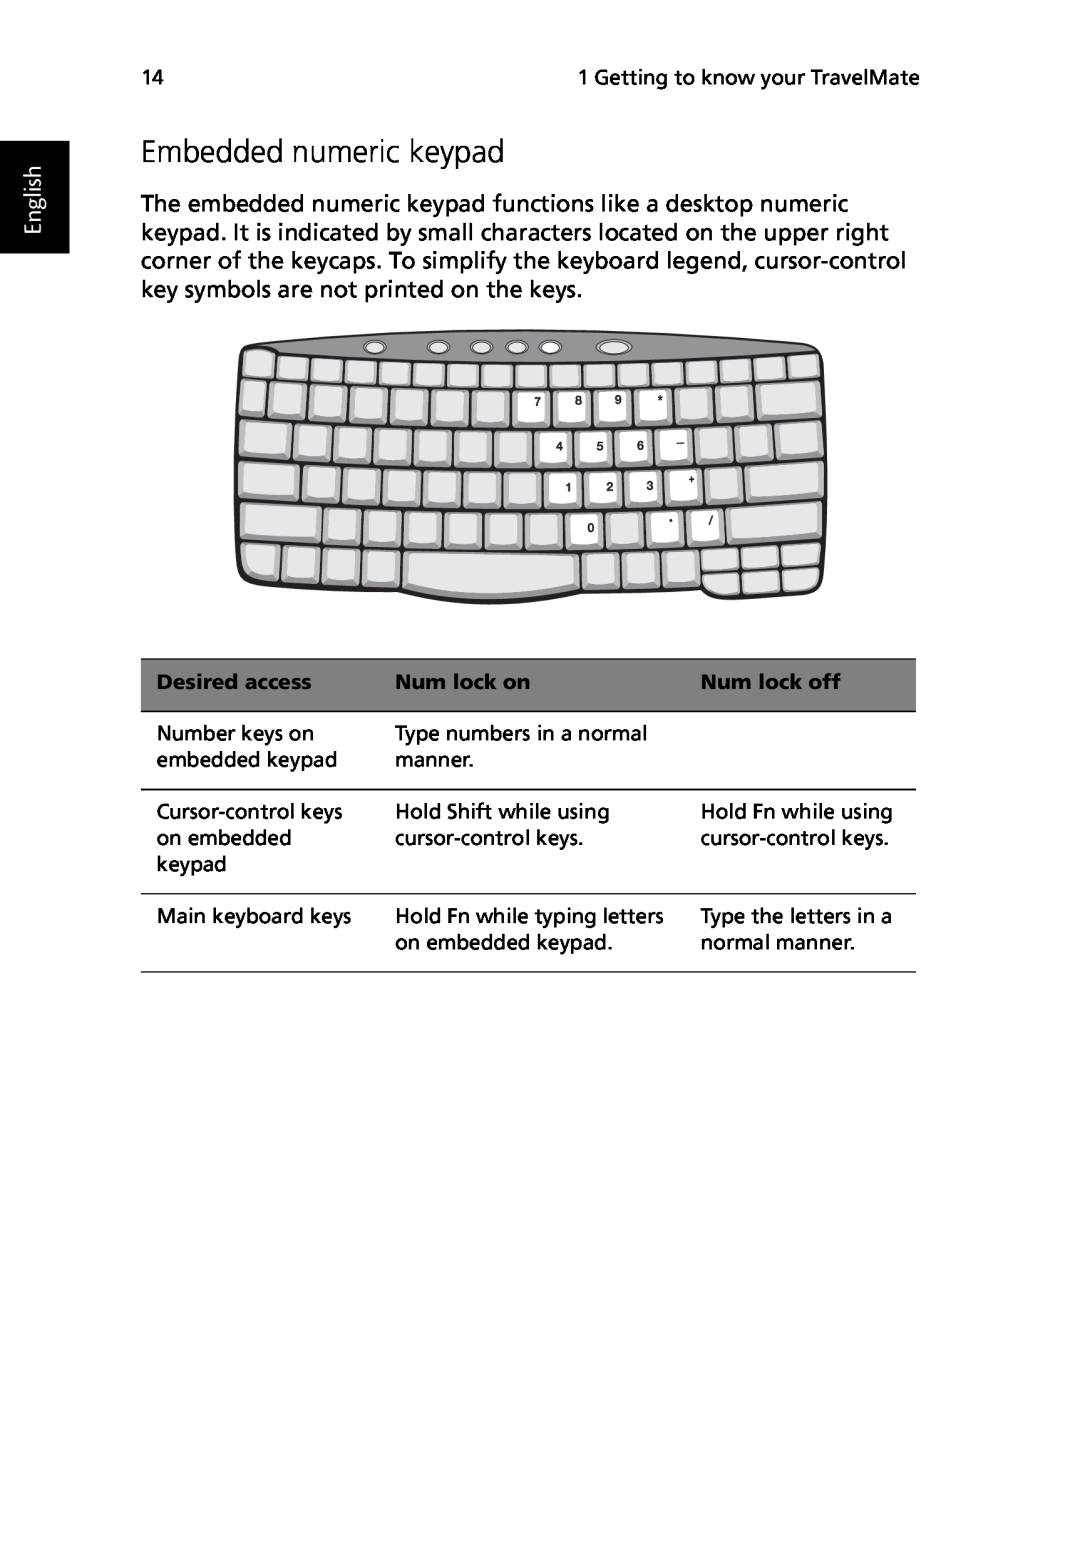 Acer TravelMate 530 manual Embedded numeric keypad, English, Desired access, Num lock on, Num lock off 